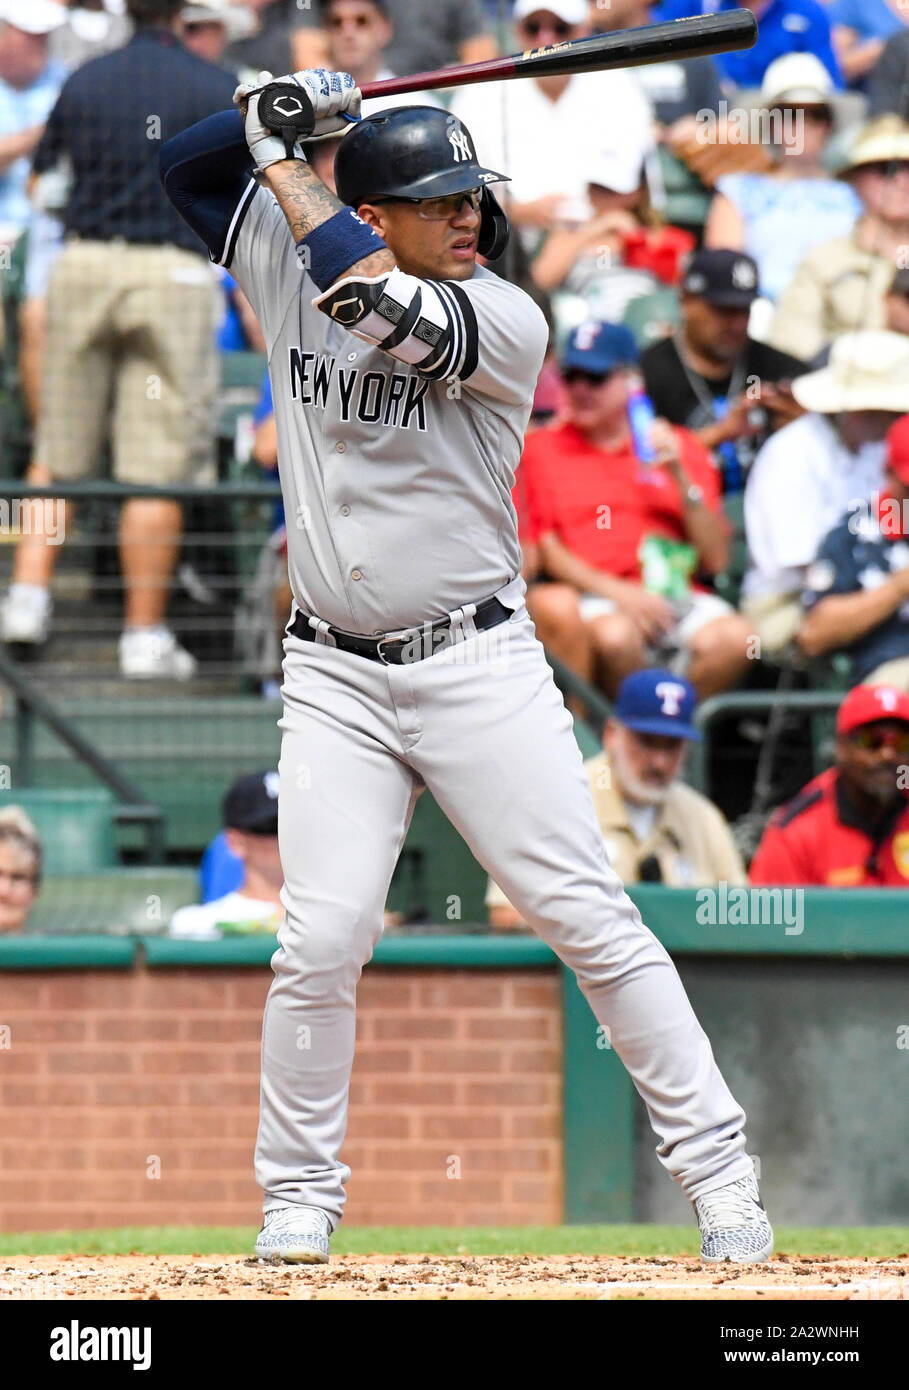 September 29, 2019: New York Yankees second baseman Gleyber Torres